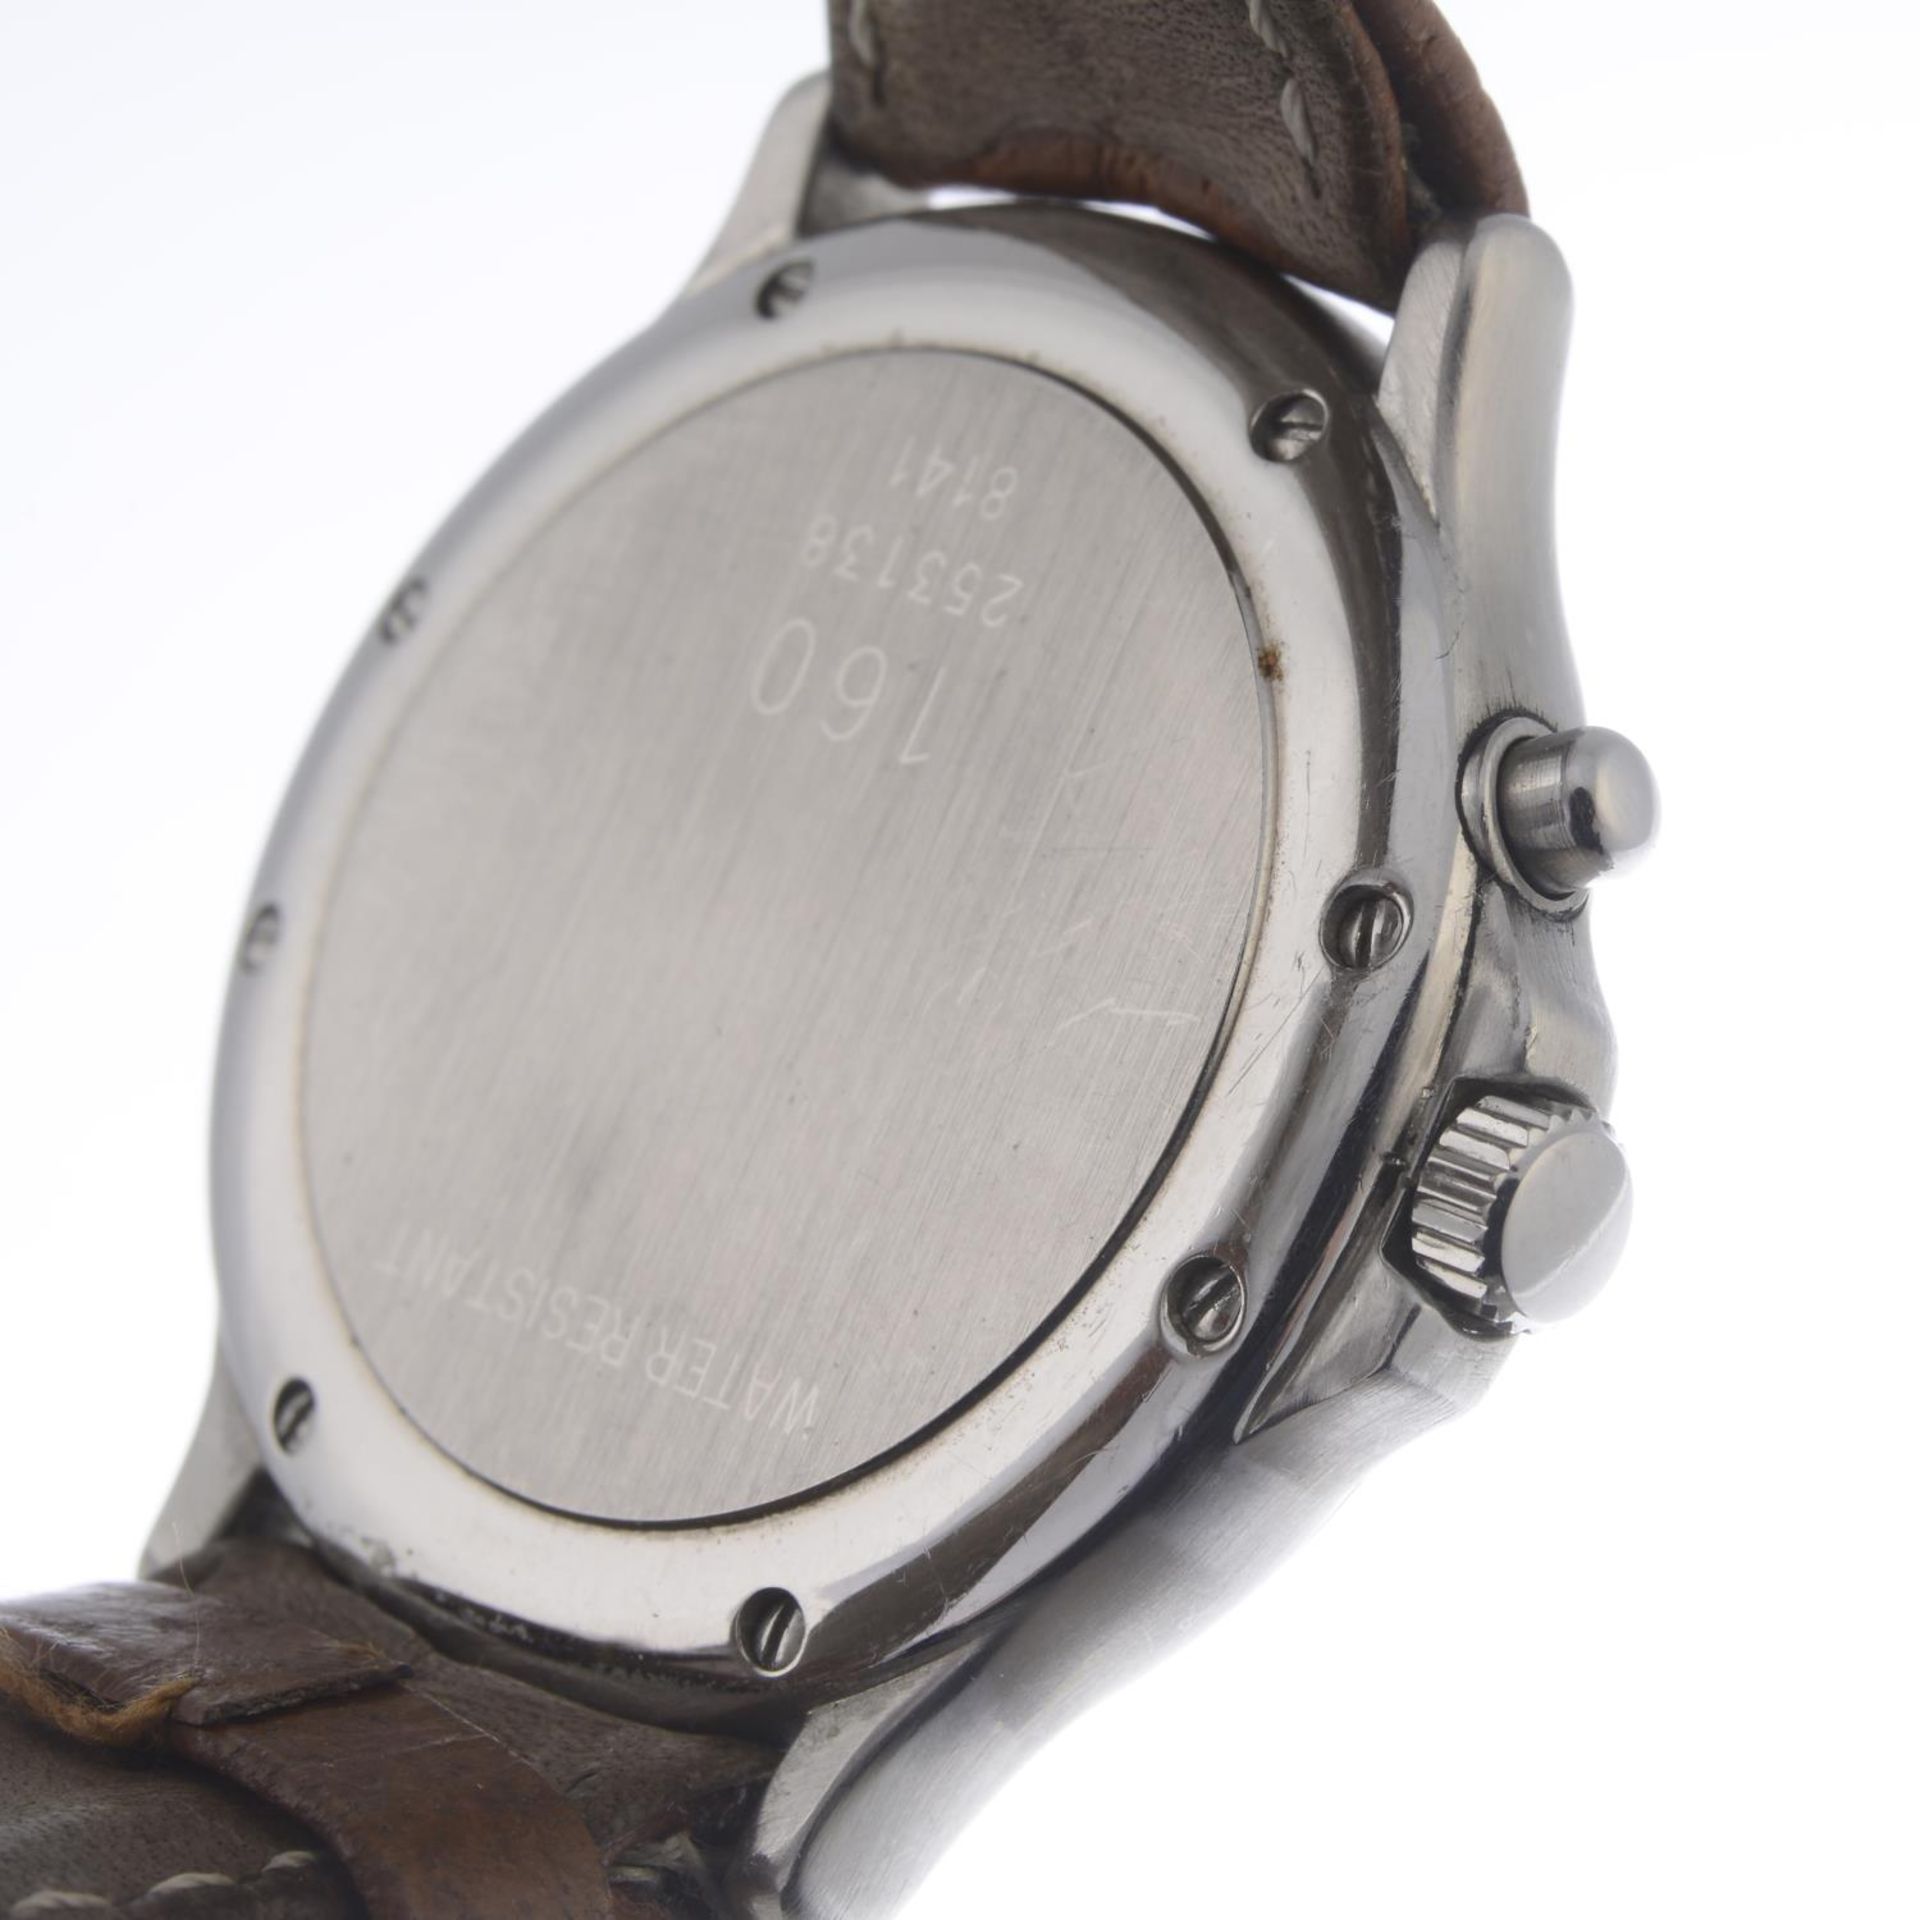 CHOPARD - a gentleman's Mille Miglia chronograph wrist watch. - Bild 2 aus 2